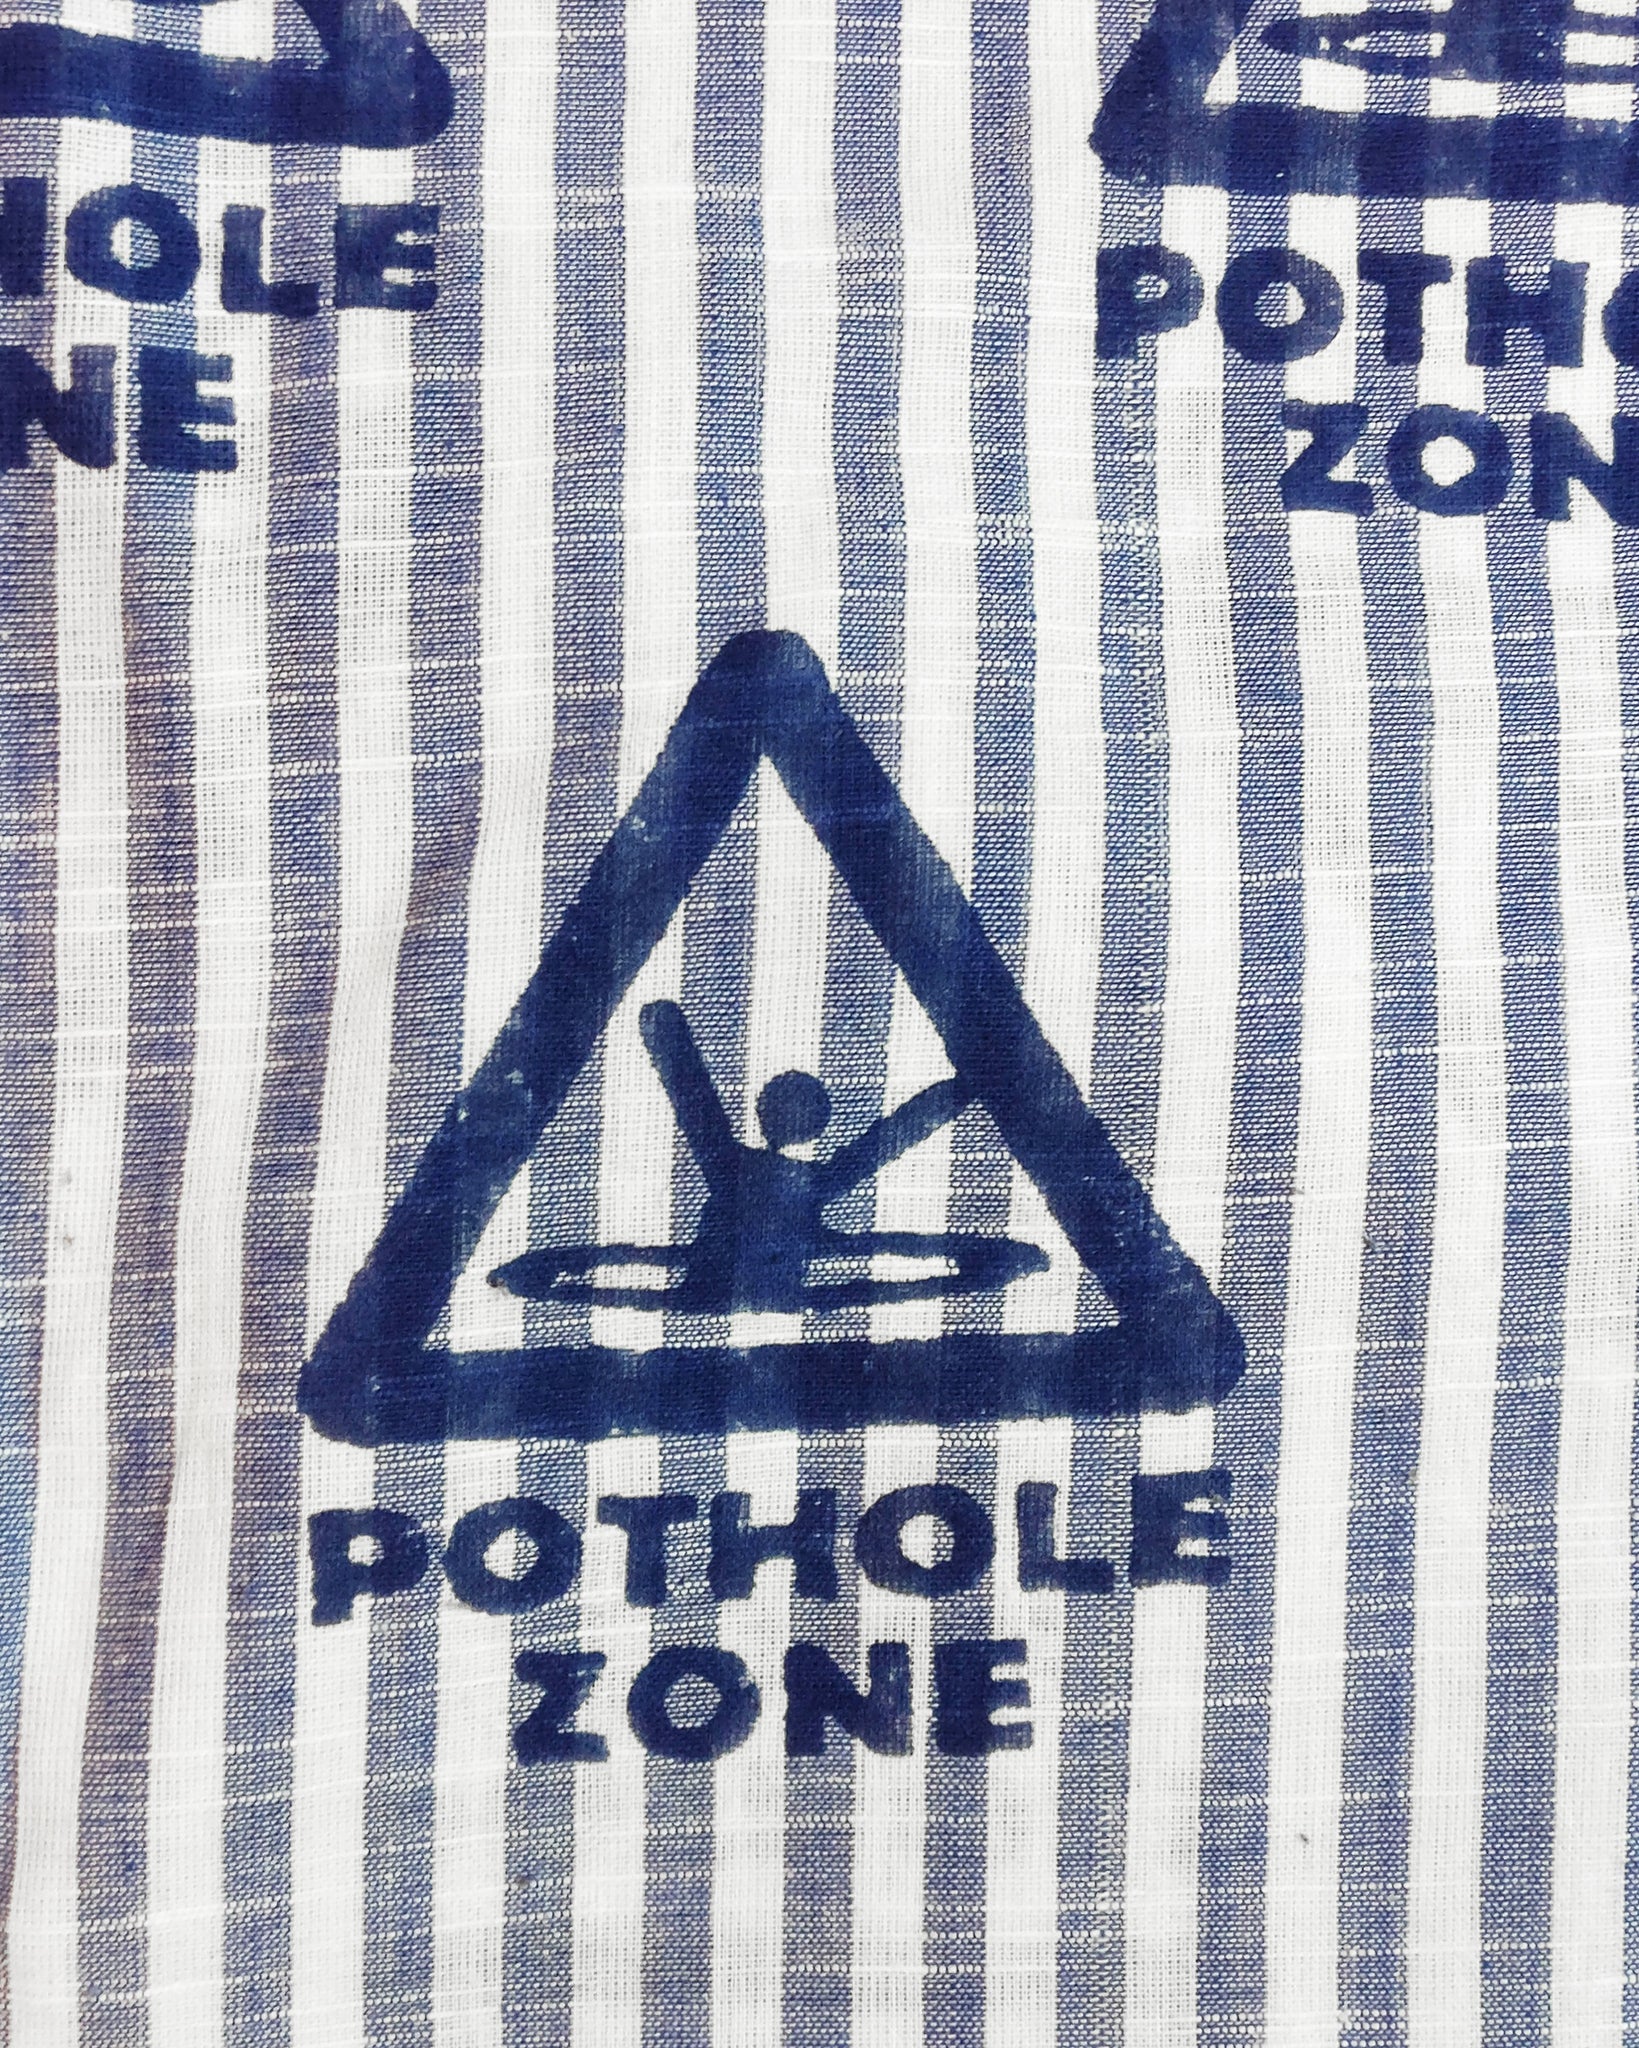 Hooded Parka Jacket - Pothole Zone On Blue Stripe